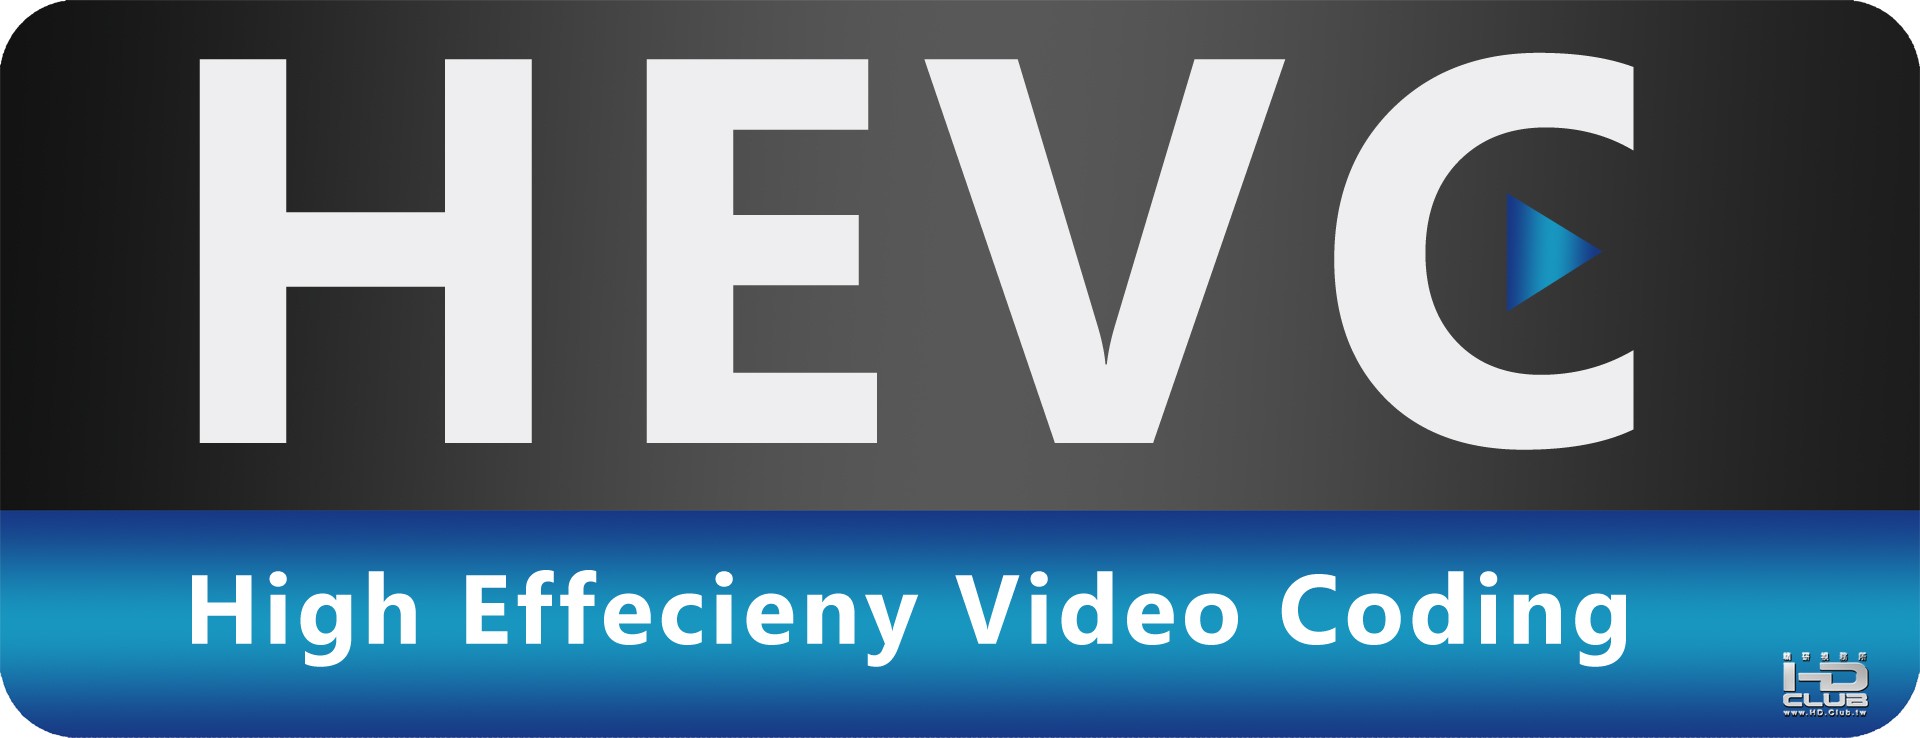 hevc-high-effeciency-video-coding.jpg